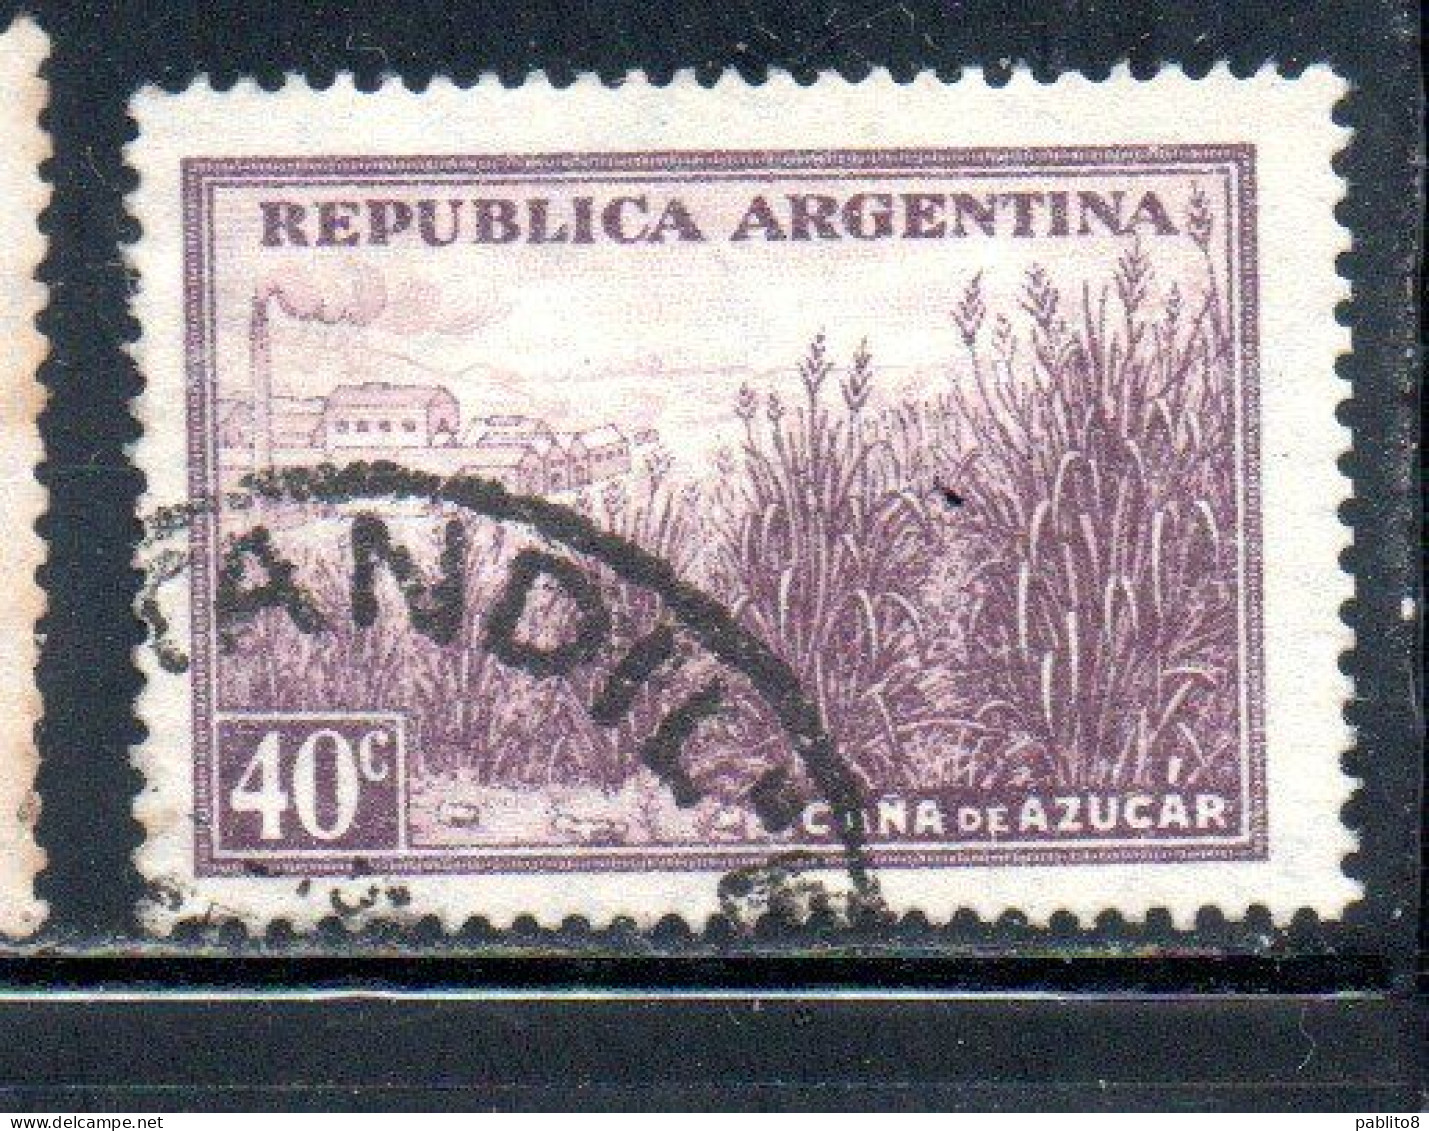 ARGENTINA 1935 1951 SUGAR CANE 1936 CANNA DA ZUCCHERO CENT. 40c USATO USED OBLITERE' - Usati